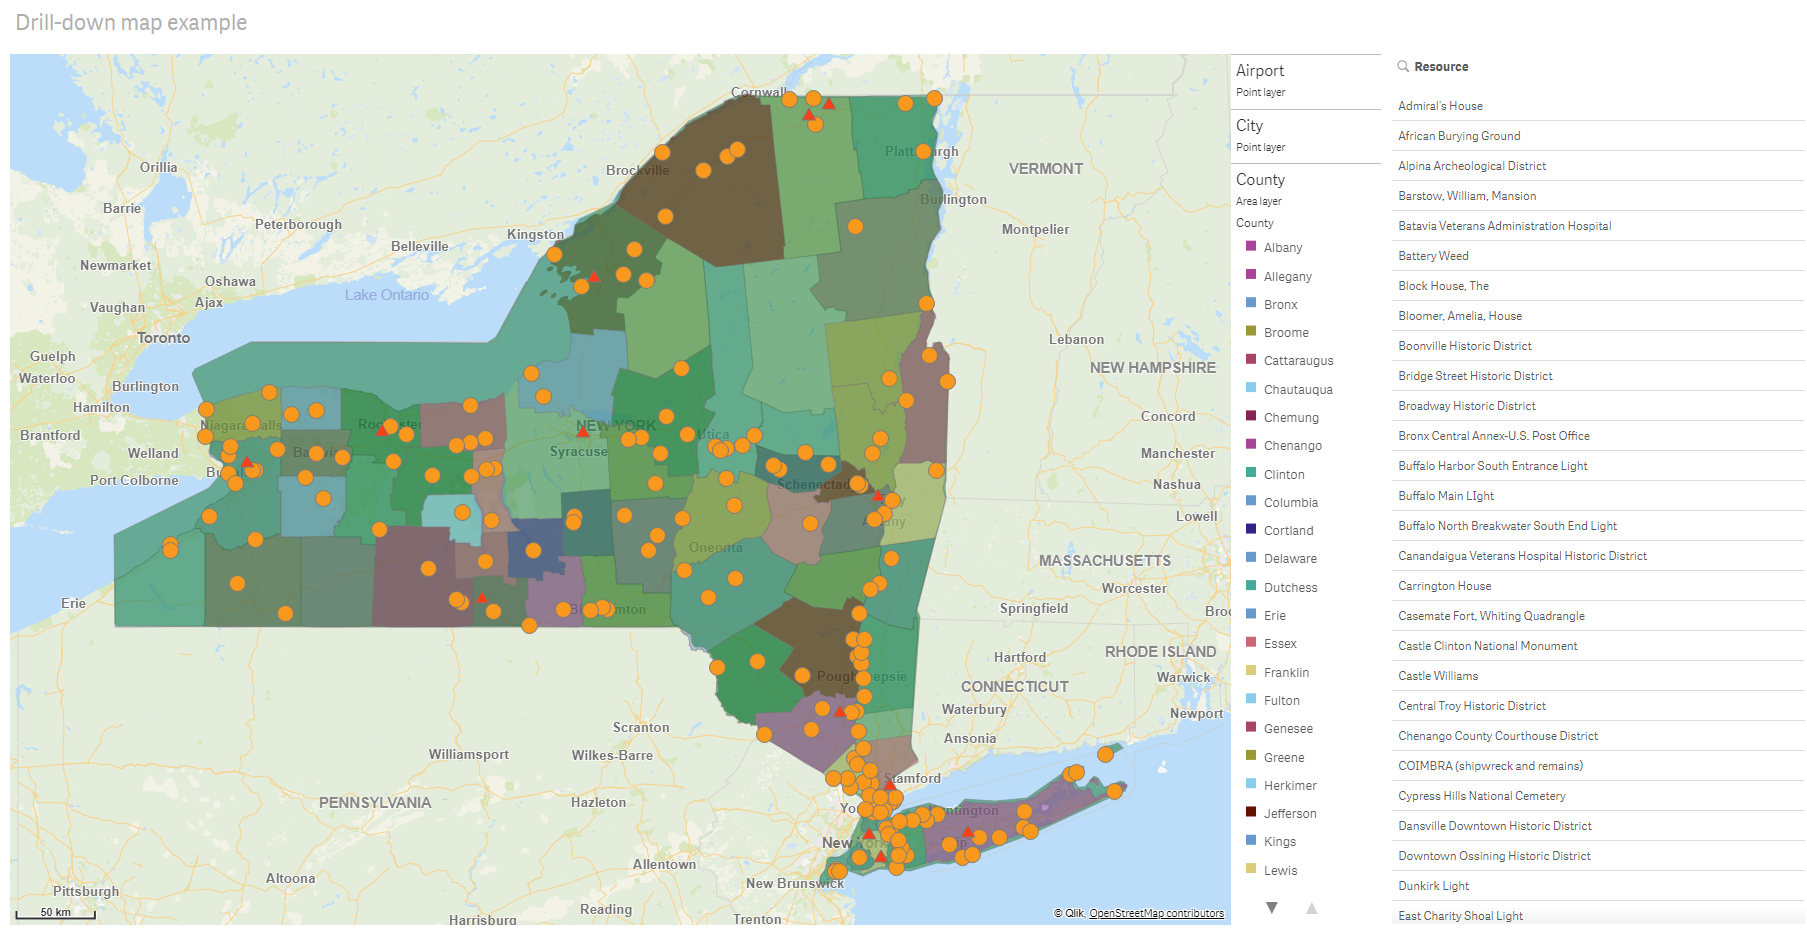 미국의 카운티와 도시 및 공항을 데이터 포인트로 표시하는 드릴다운 레이어가 있는 맵